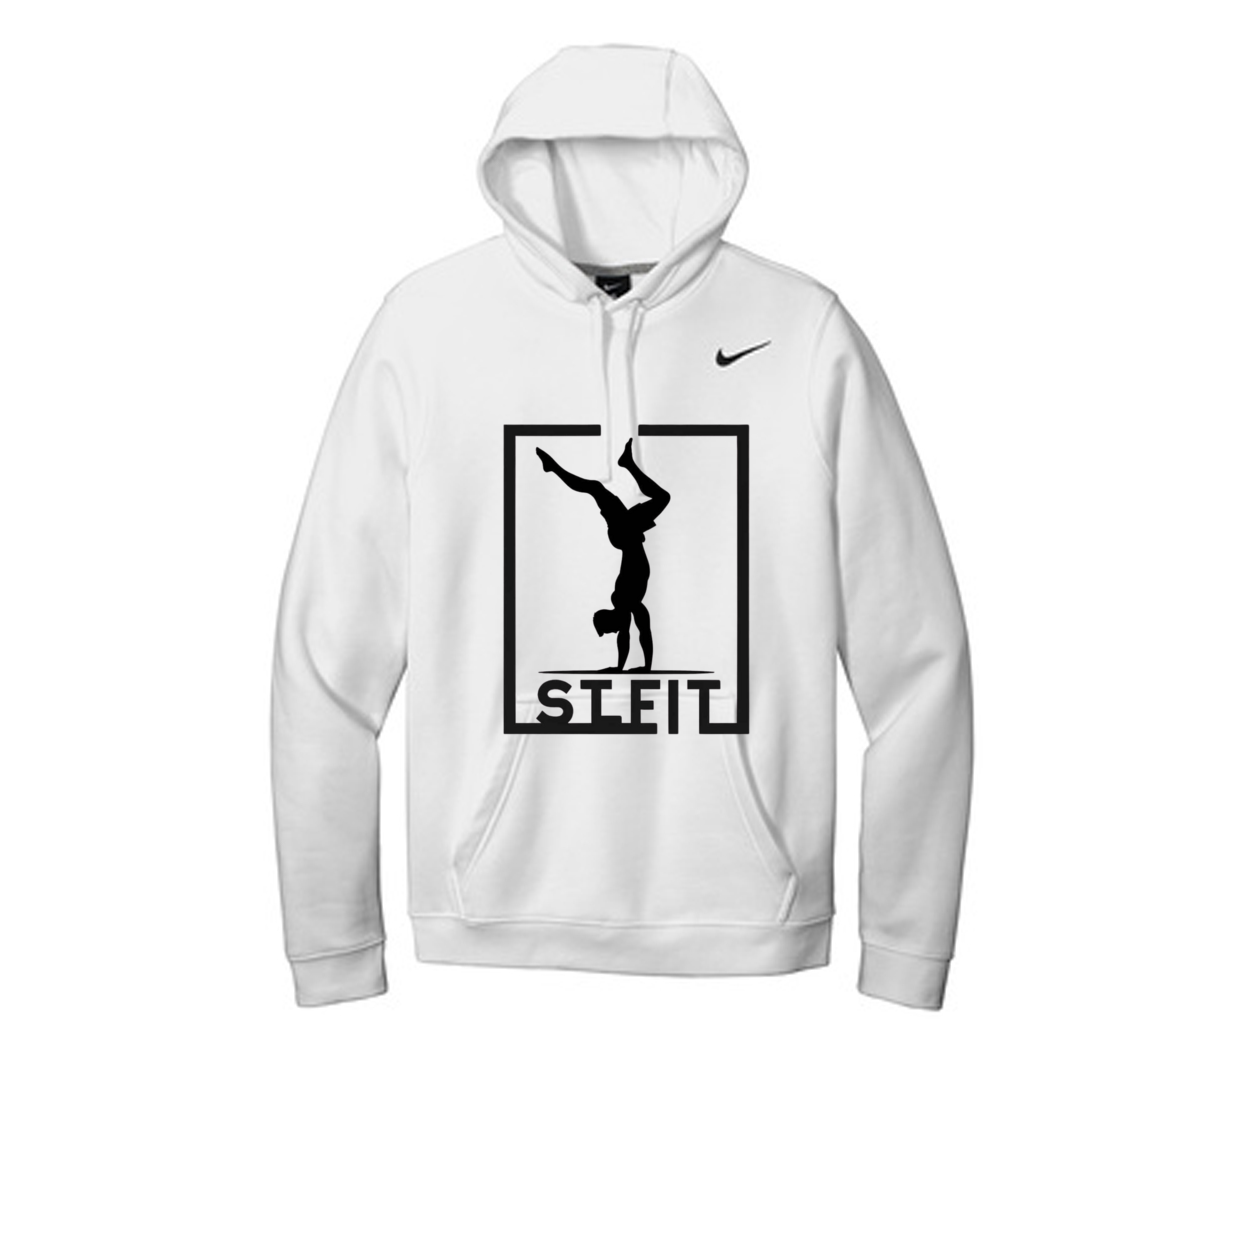 STL FIT Nike Club Fleece Pullover Hoodie Top